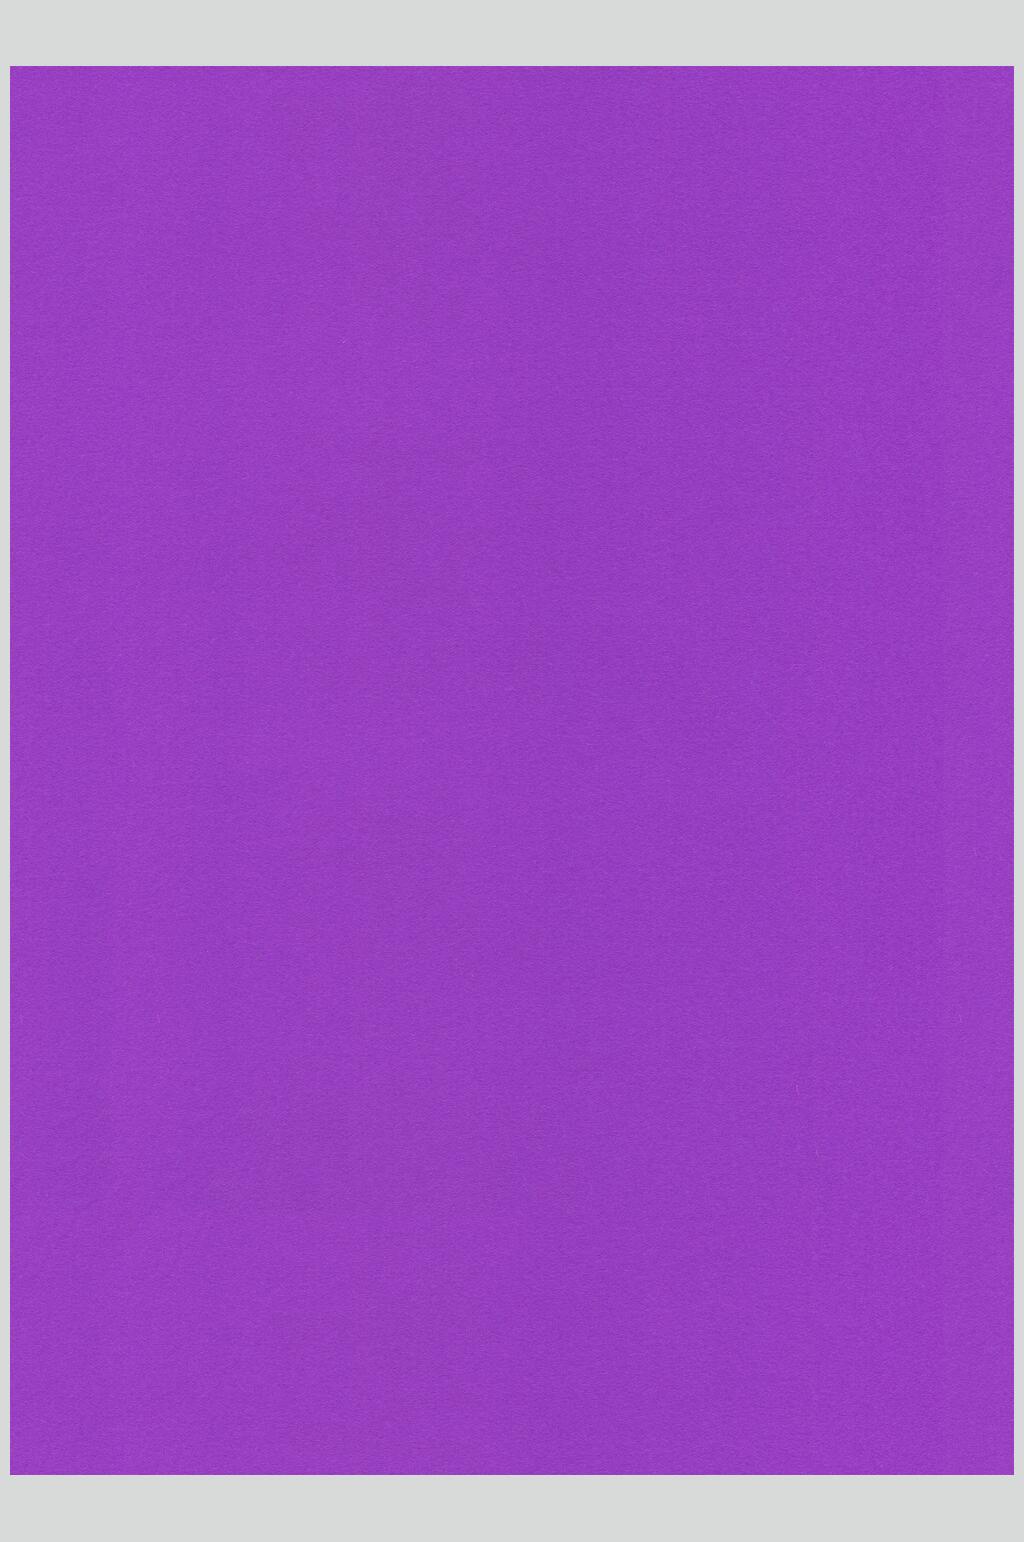 纸张纹理贴图素材纯色紫色摄影图